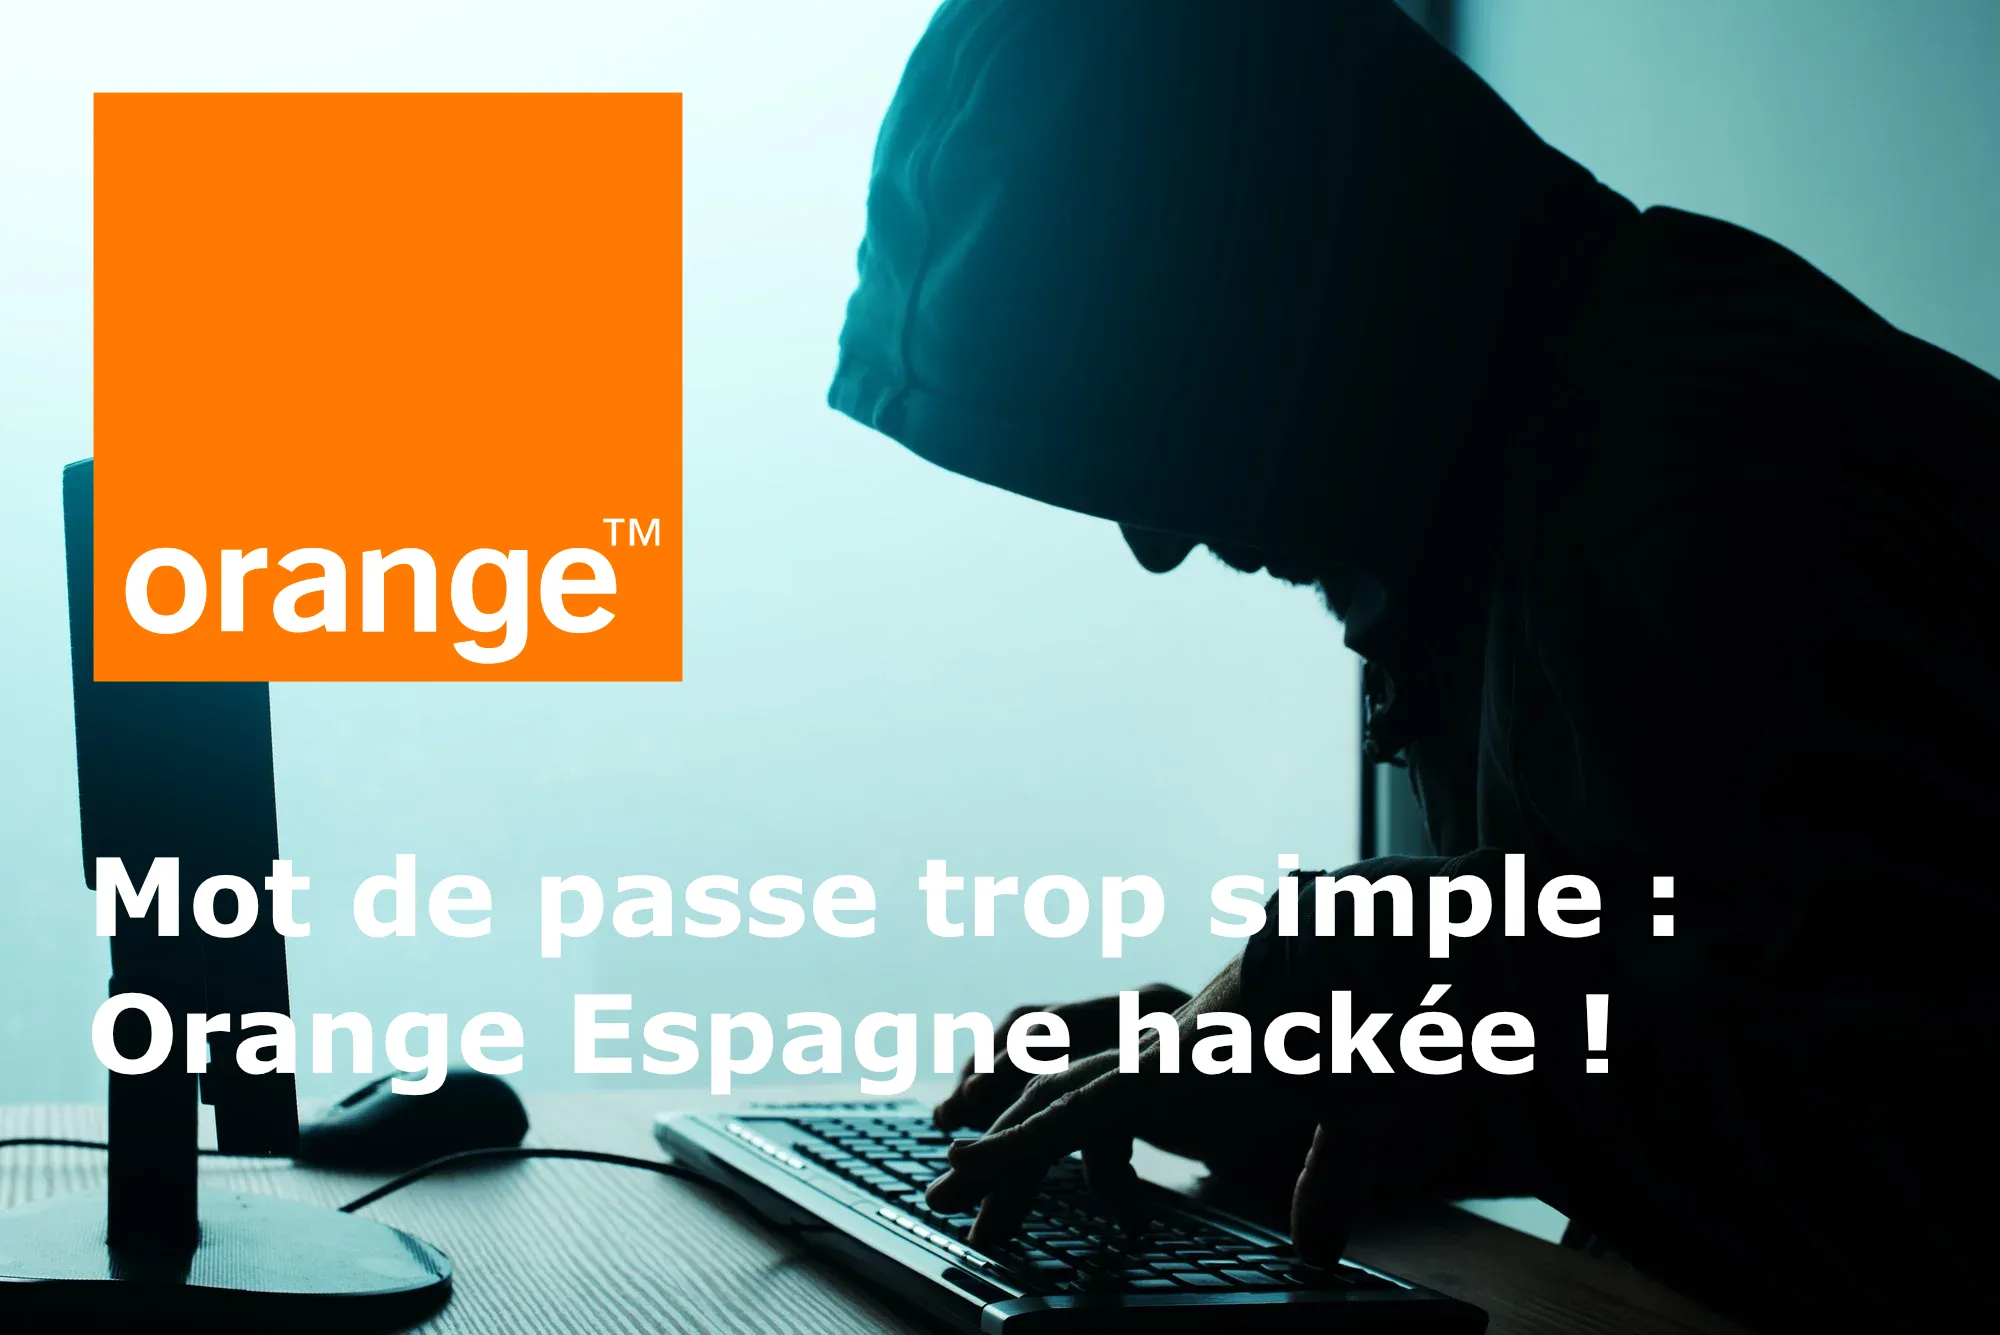 Orange Espagne : Une faille de sécurité béante exposée par un hacker